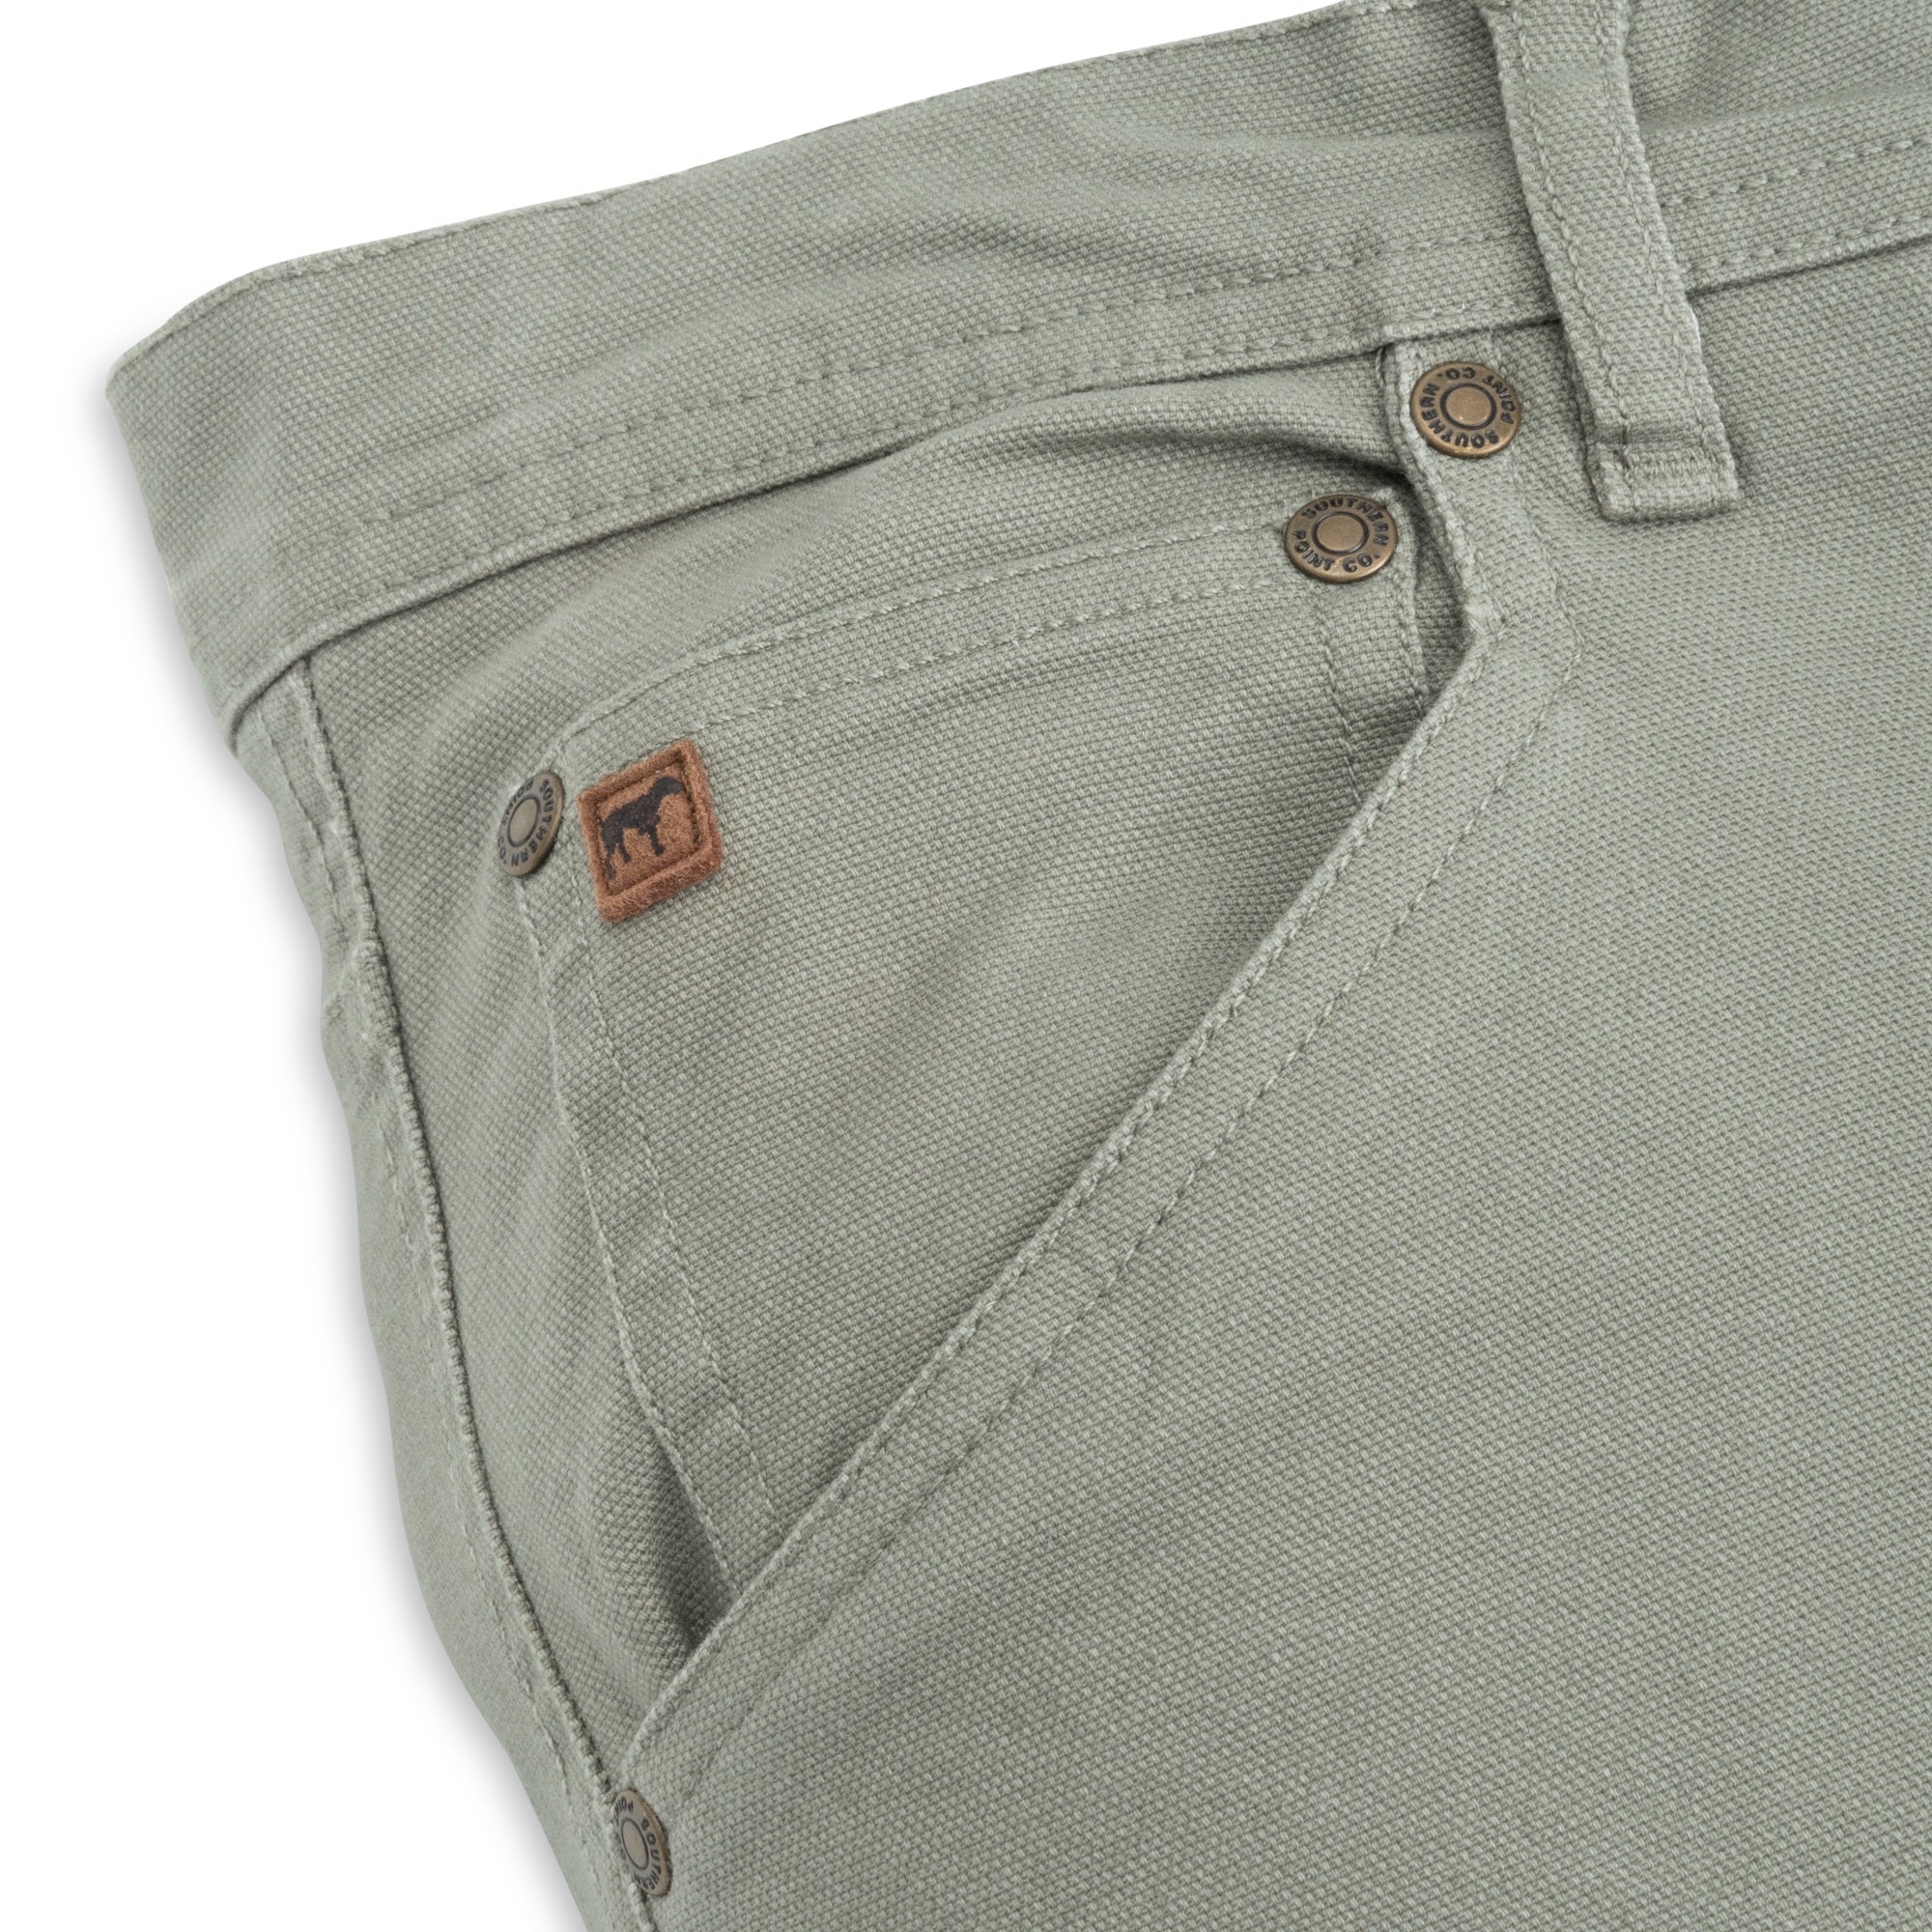 men's payton 5 pocket pants